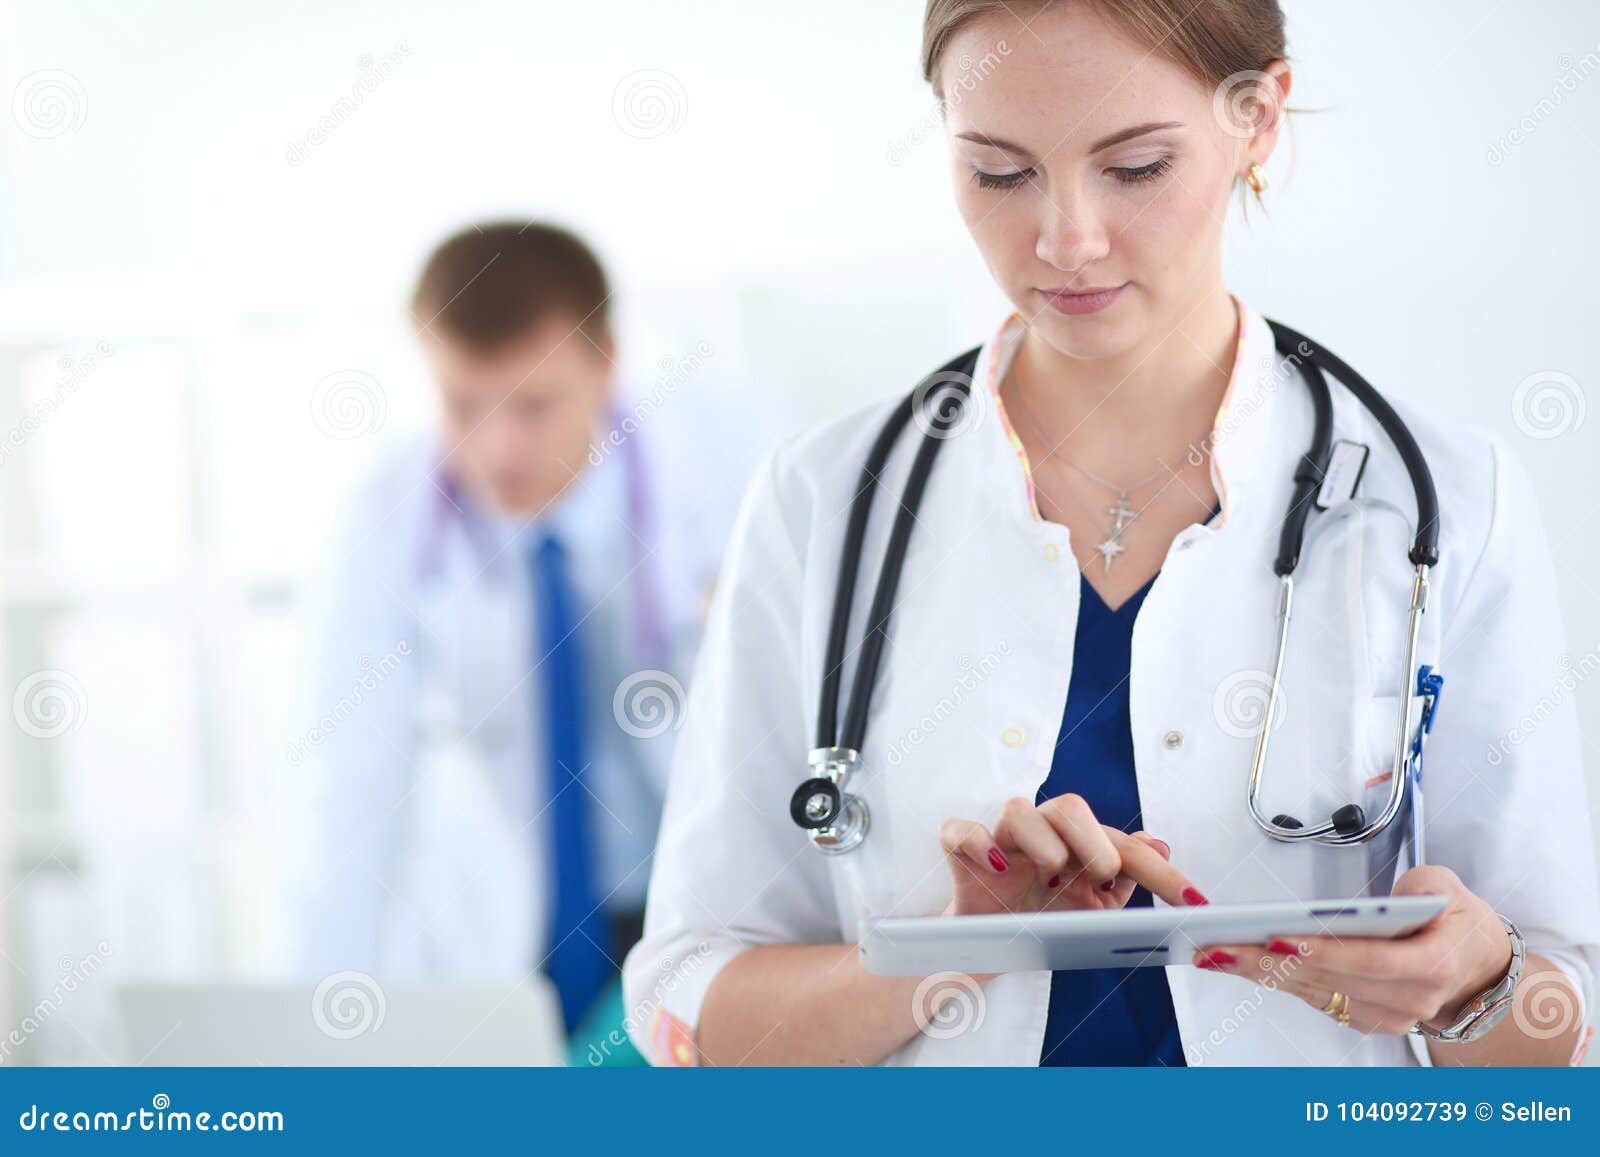 Человек выздоровит. Доктор женщина. Лечебное дело врач. Доктор со стетоскопом. Женщина врач фото.